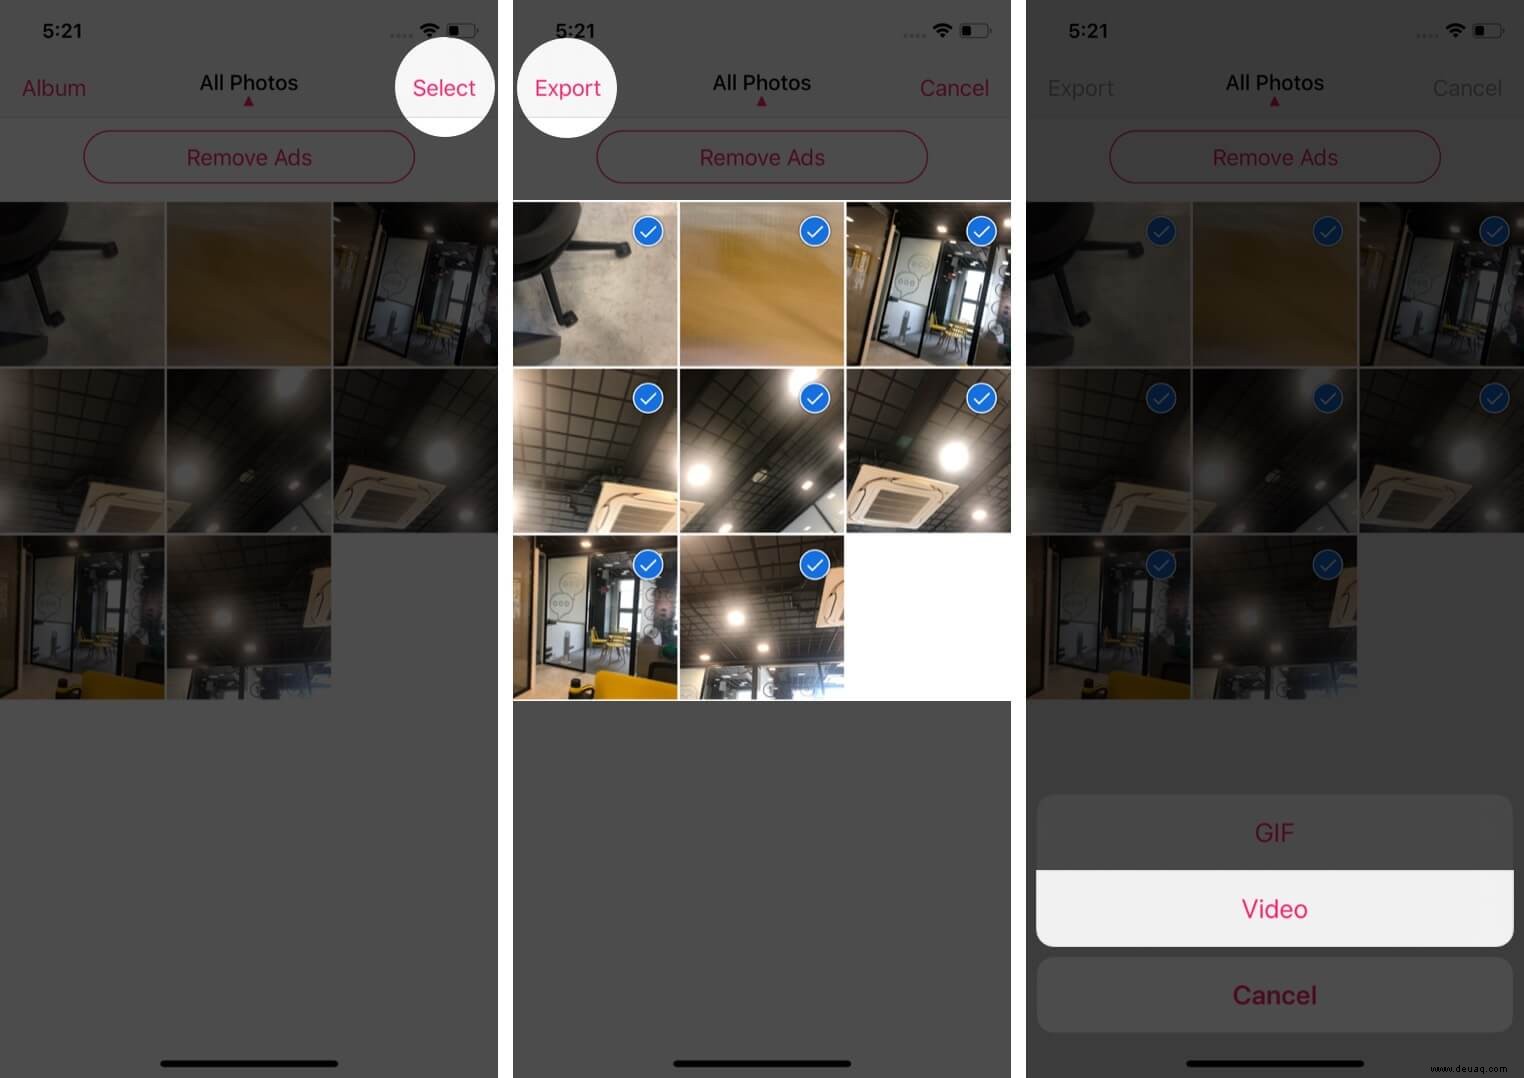 So verwandeln Sie Live-Fotos in Videos auf Ihrem iPhone 